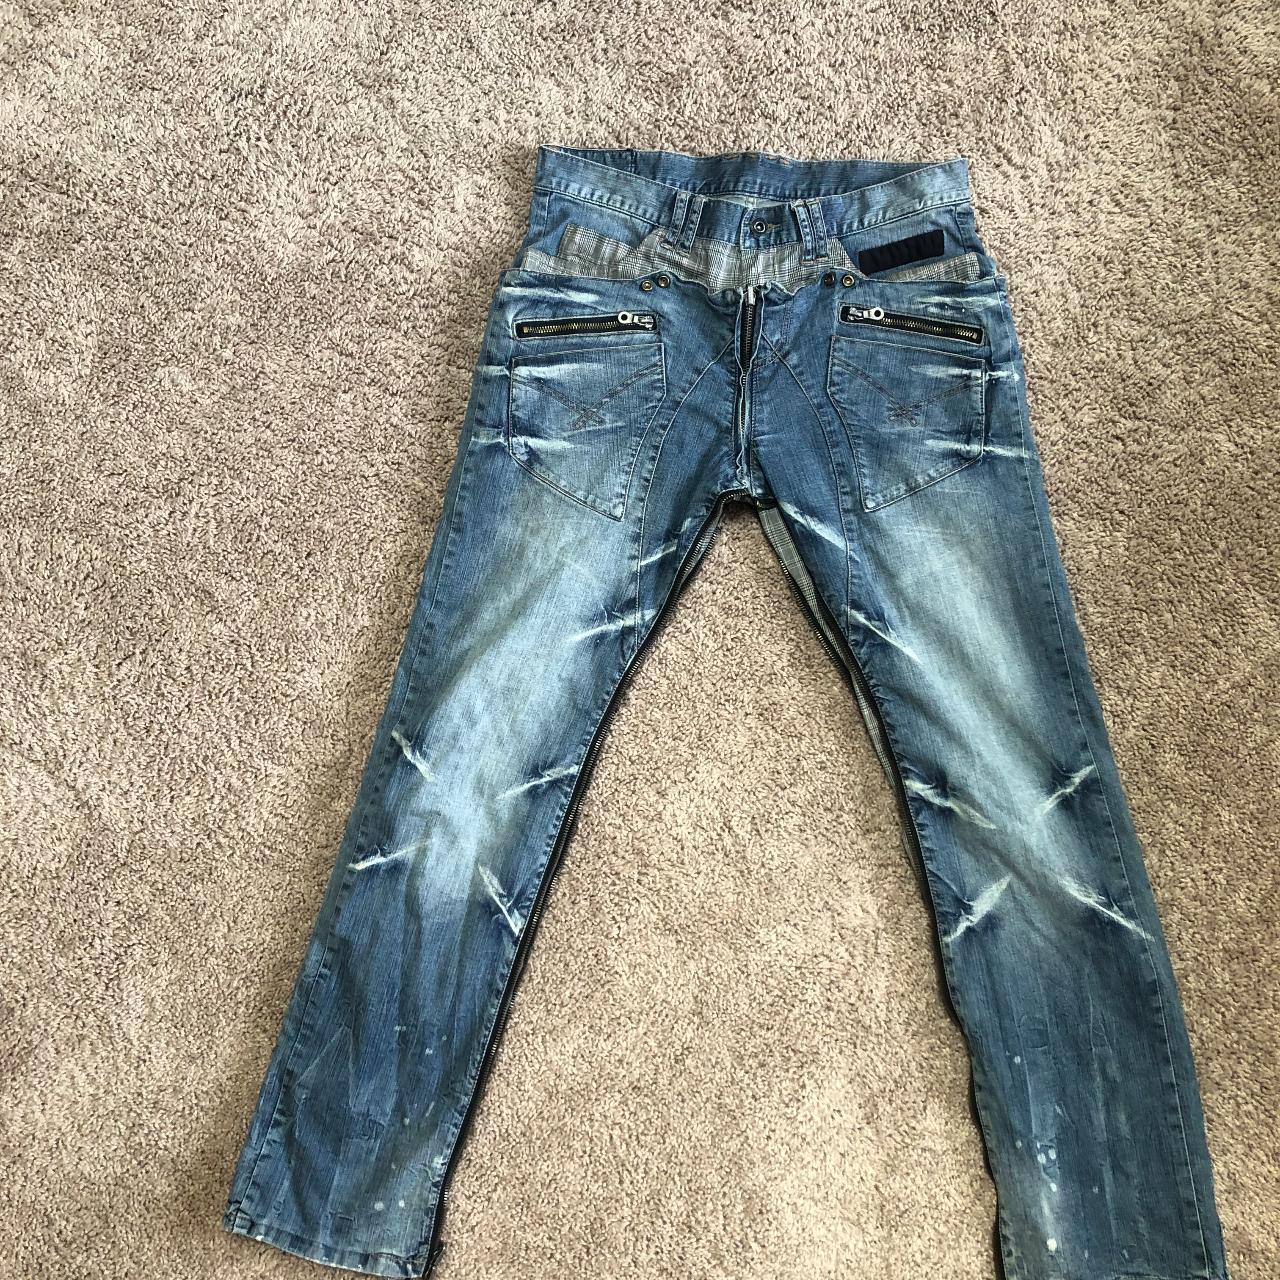 PPFM Hybrid flip jeans 10 pockets, easy to change... - Depop